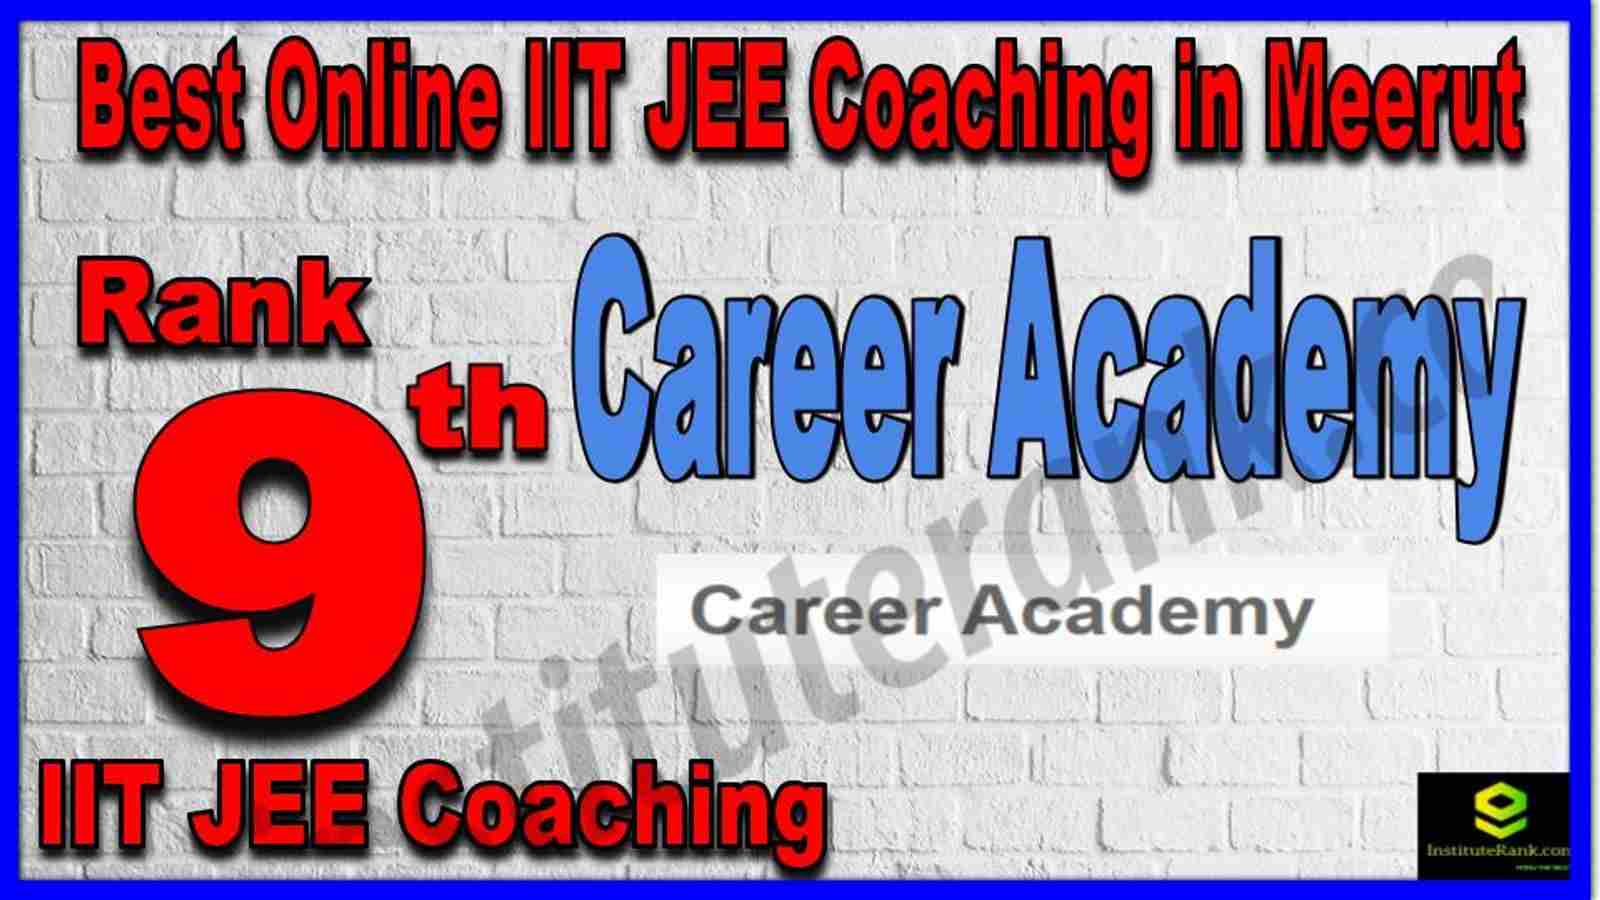 Rank 9th Best Online IIT JEE Coaching in Meerut